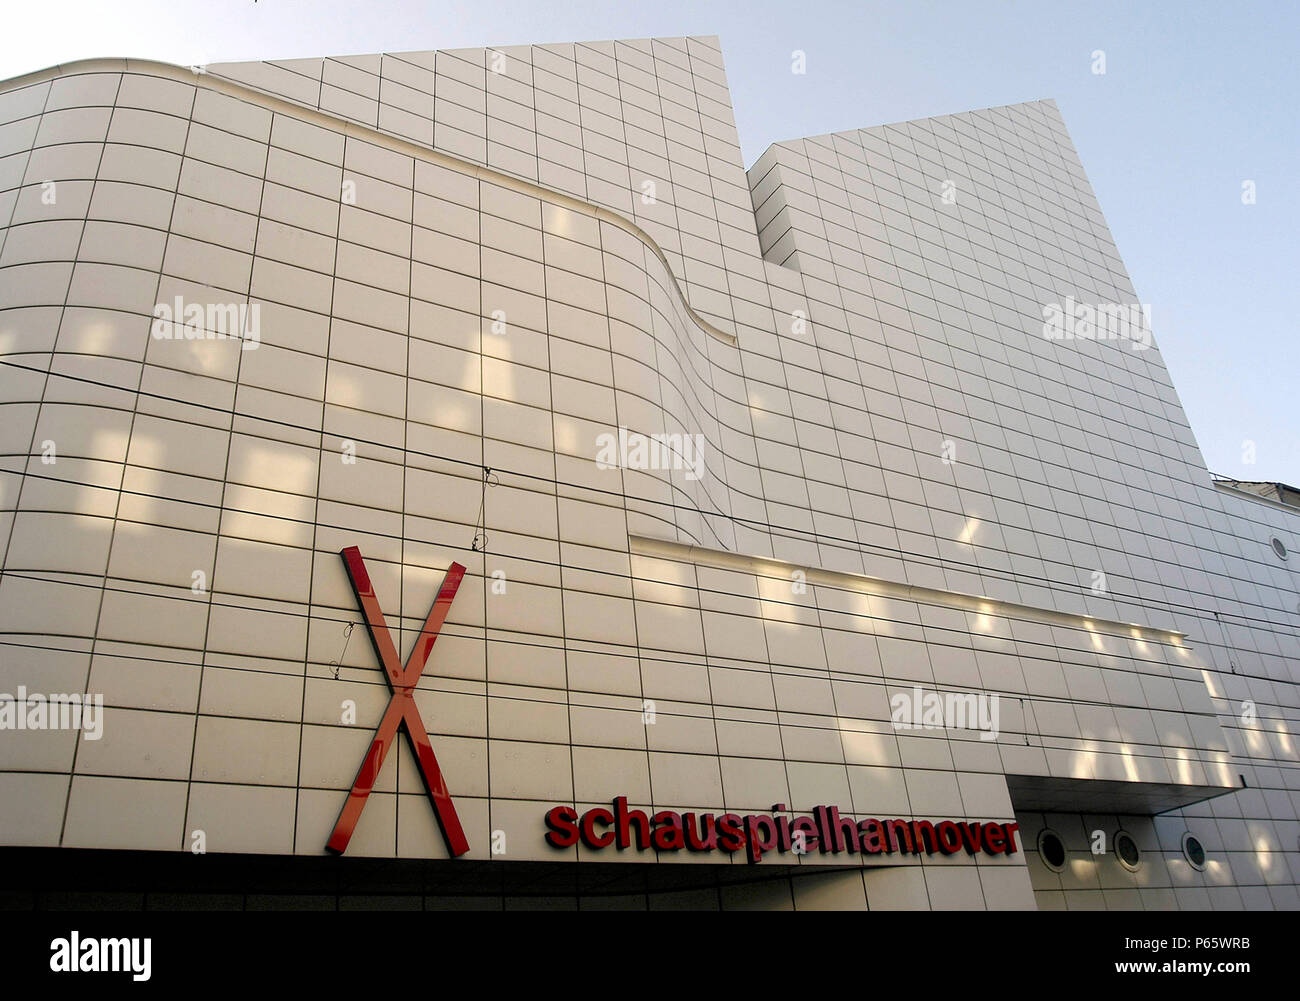 Vista exterior de la gran fachada del teatro de Hannover, Alemania. Foto de stock